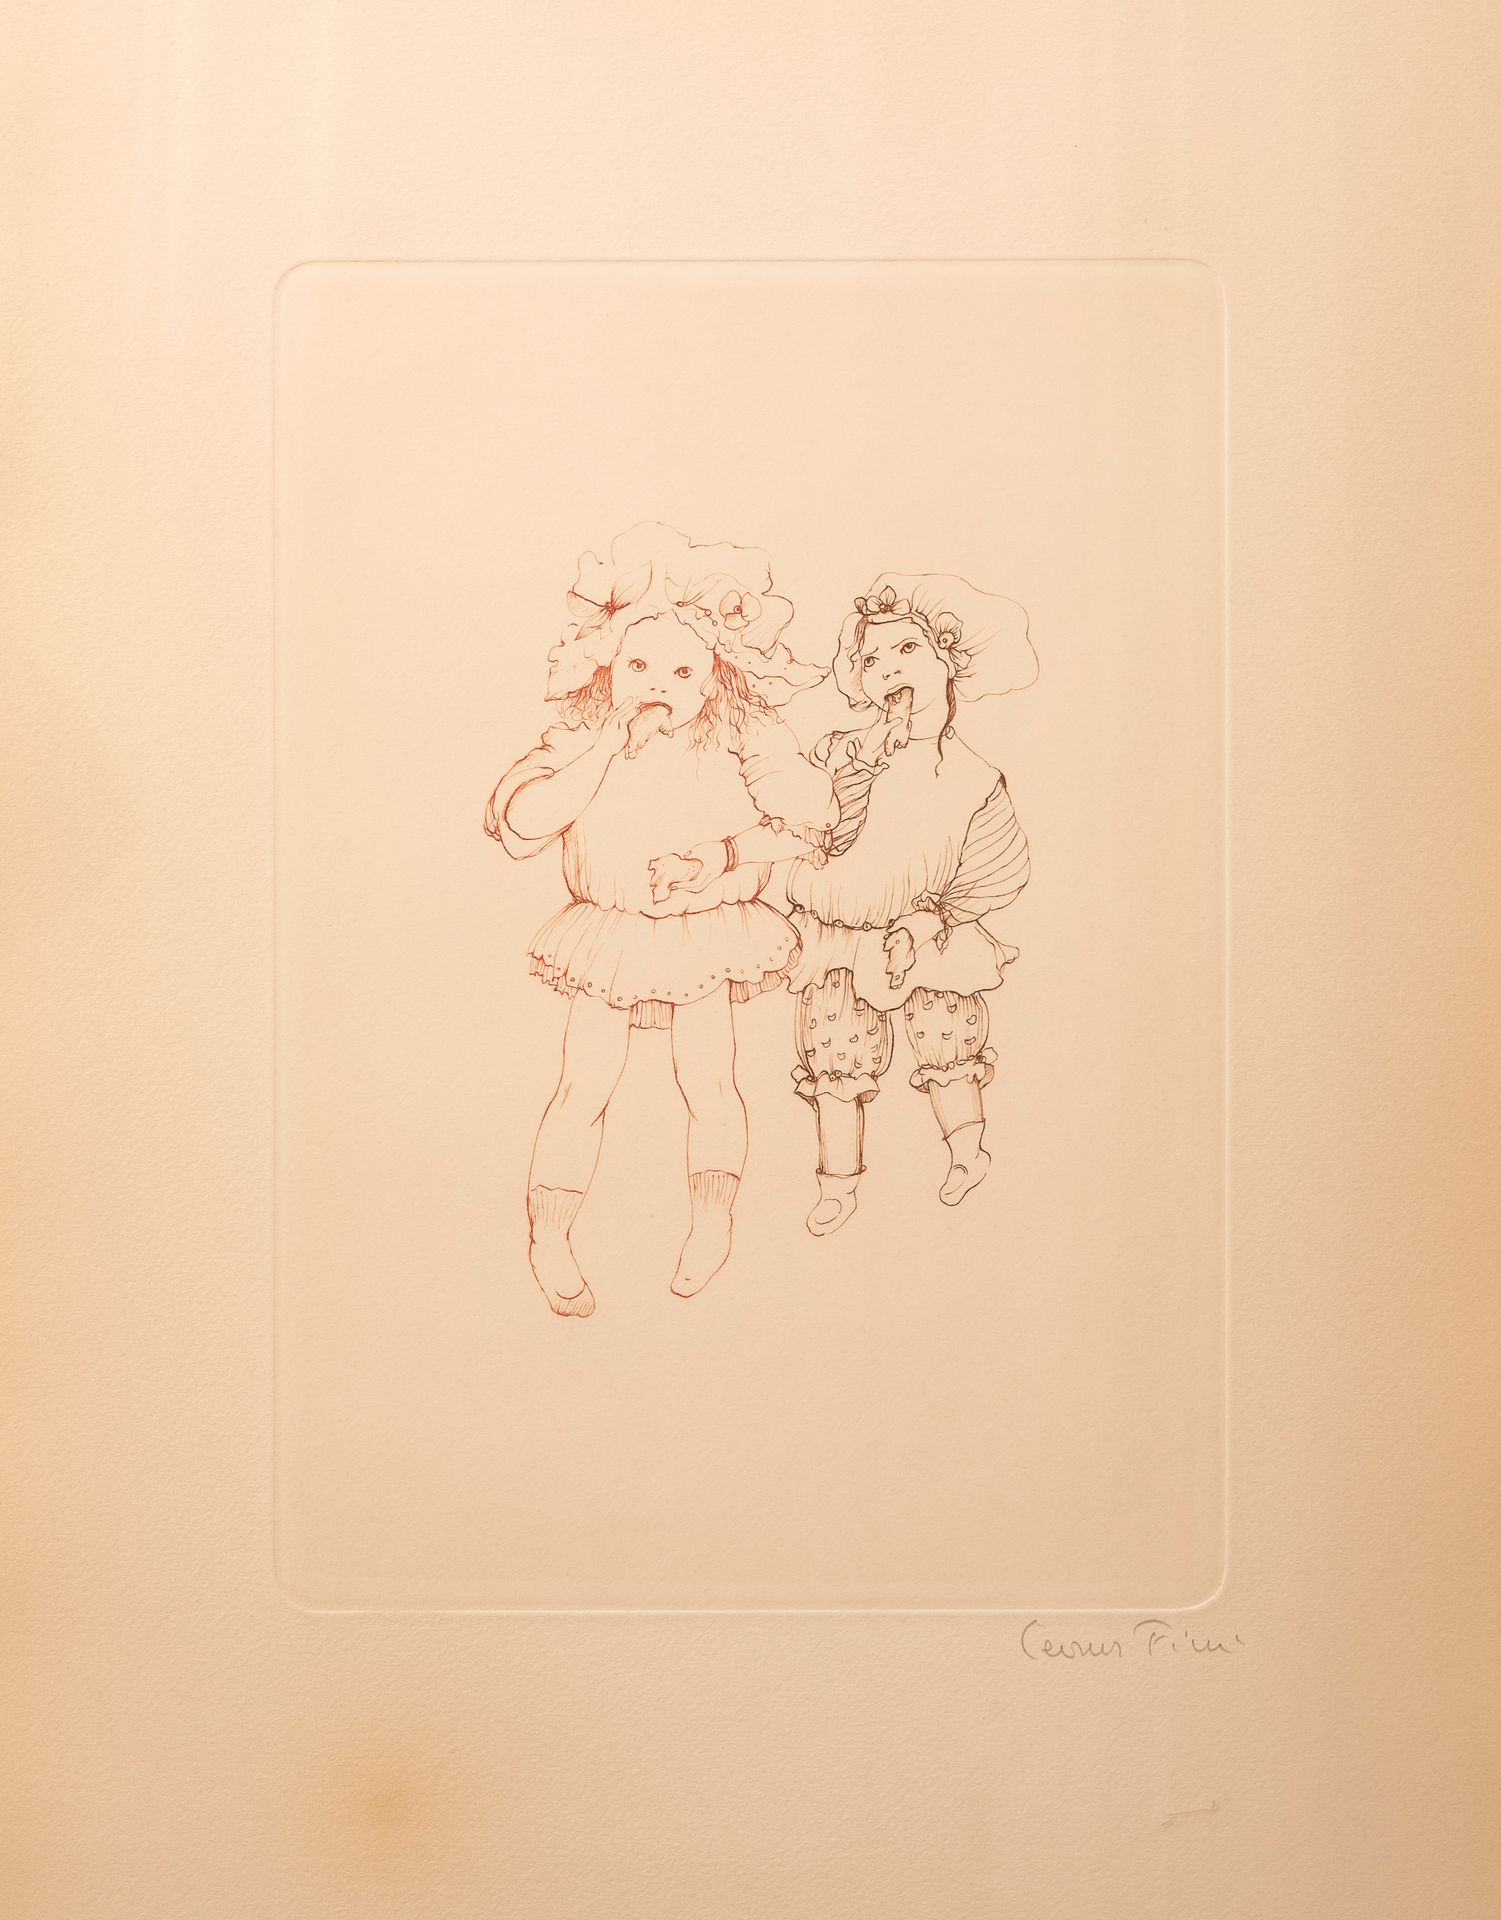 Null 莱昂诺-菲尼 (1907-1996)

两名身着服装的儿童

右下角签名的雕版画

54 x 37厘米